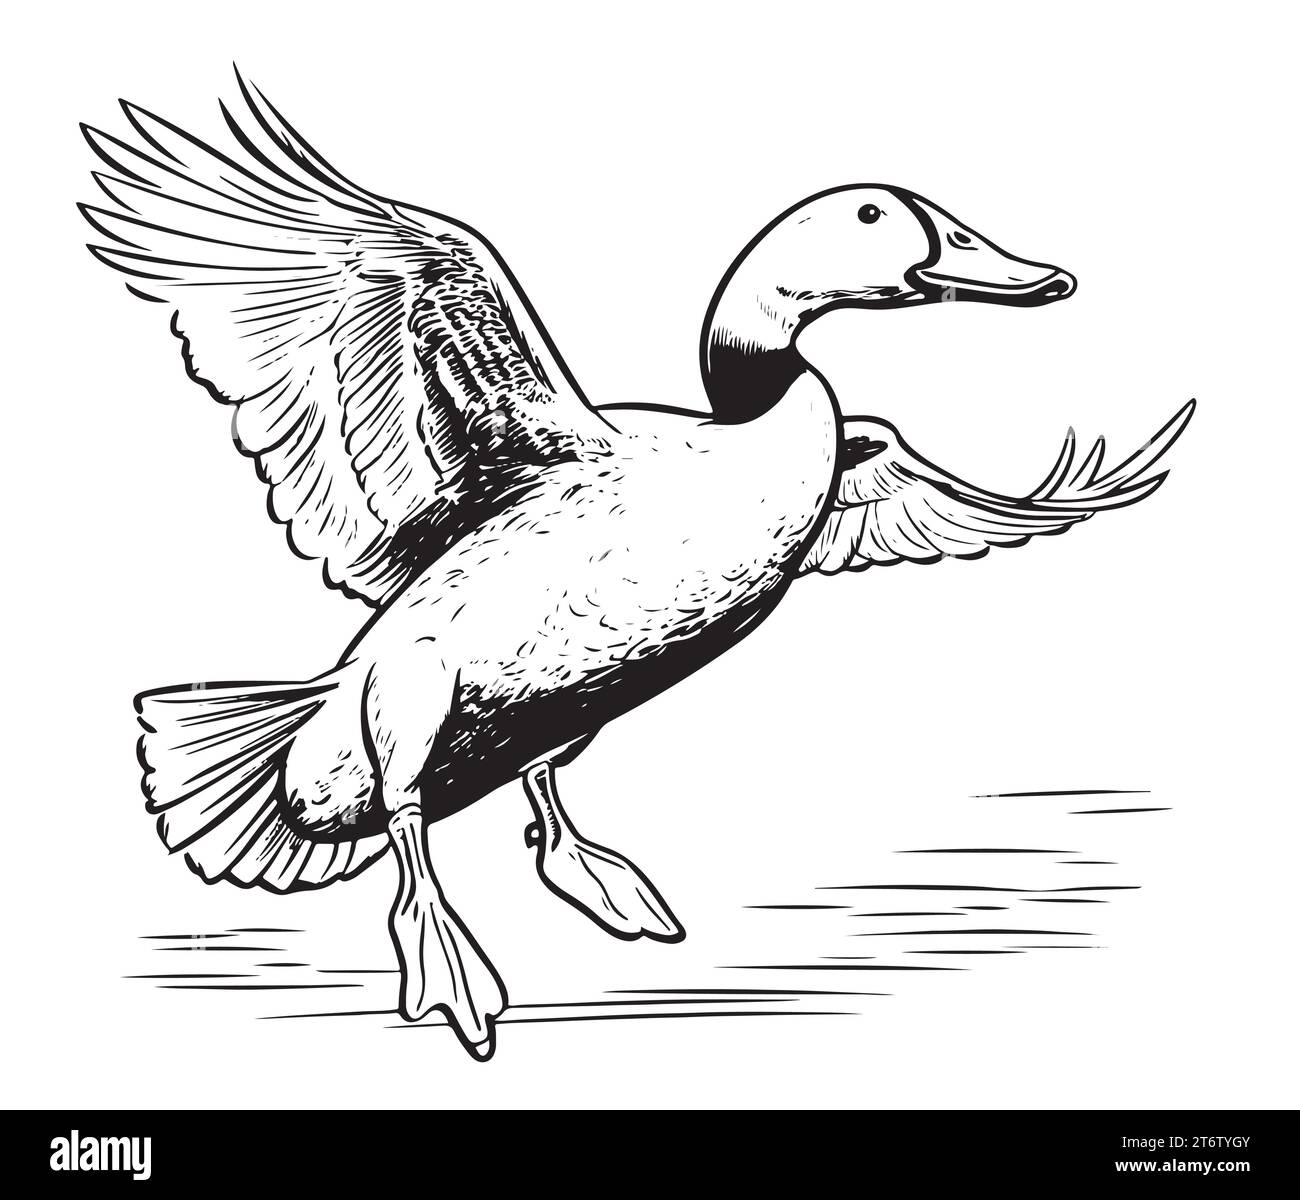 Croquis volant de canard dessiné à la main illustration vectorielle chasse aux oiseaux Illustration de Vecteur